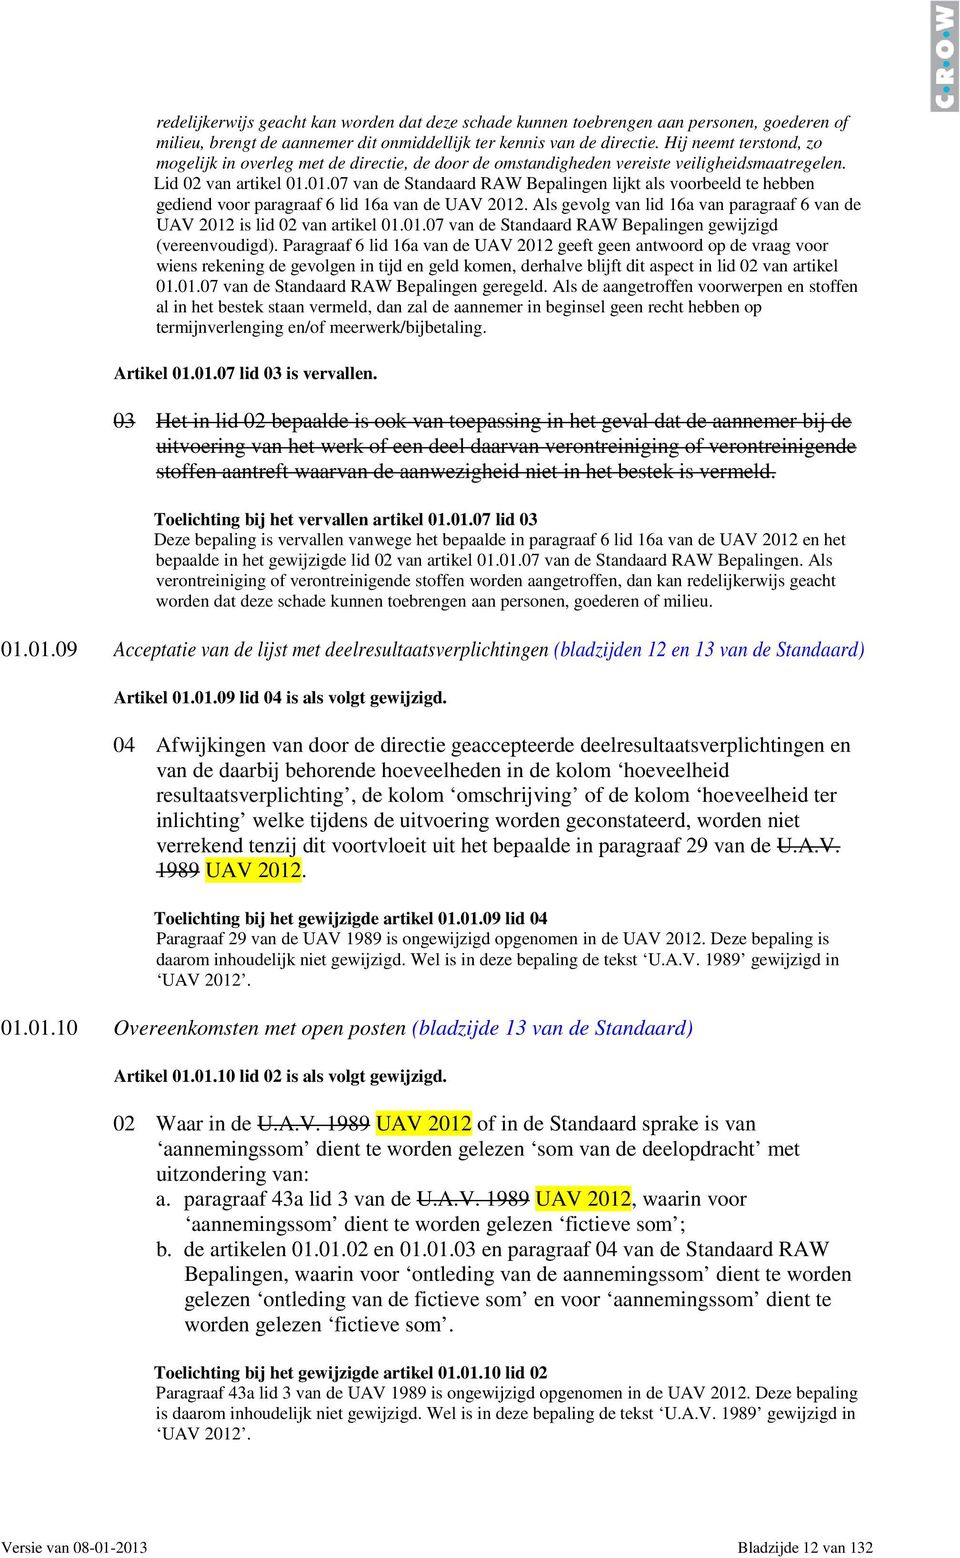 01.07 van de Standaard RAW Bepalingen lijkt als voorbeeld te hebben gediend voor paragraaf 6 lid 16a van de UAV 2012. Als gevolg van lid 16a van paragraaf 6 van de UAV 2012 is lid 02 van artikel 01.